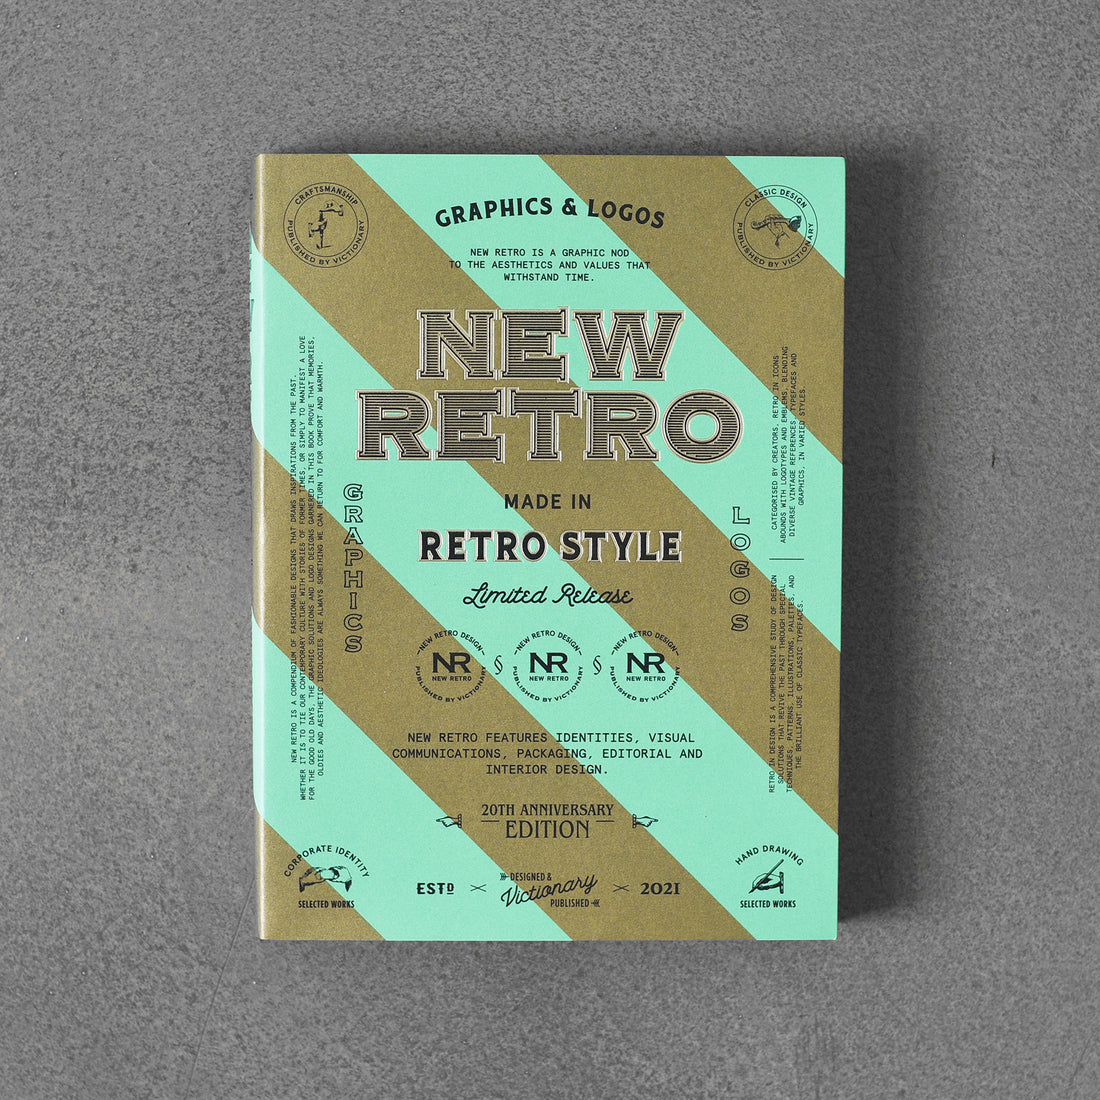 NOWE RETRO: wydanie z okazji 20. rocznicy: grafika i logo w stylu retro